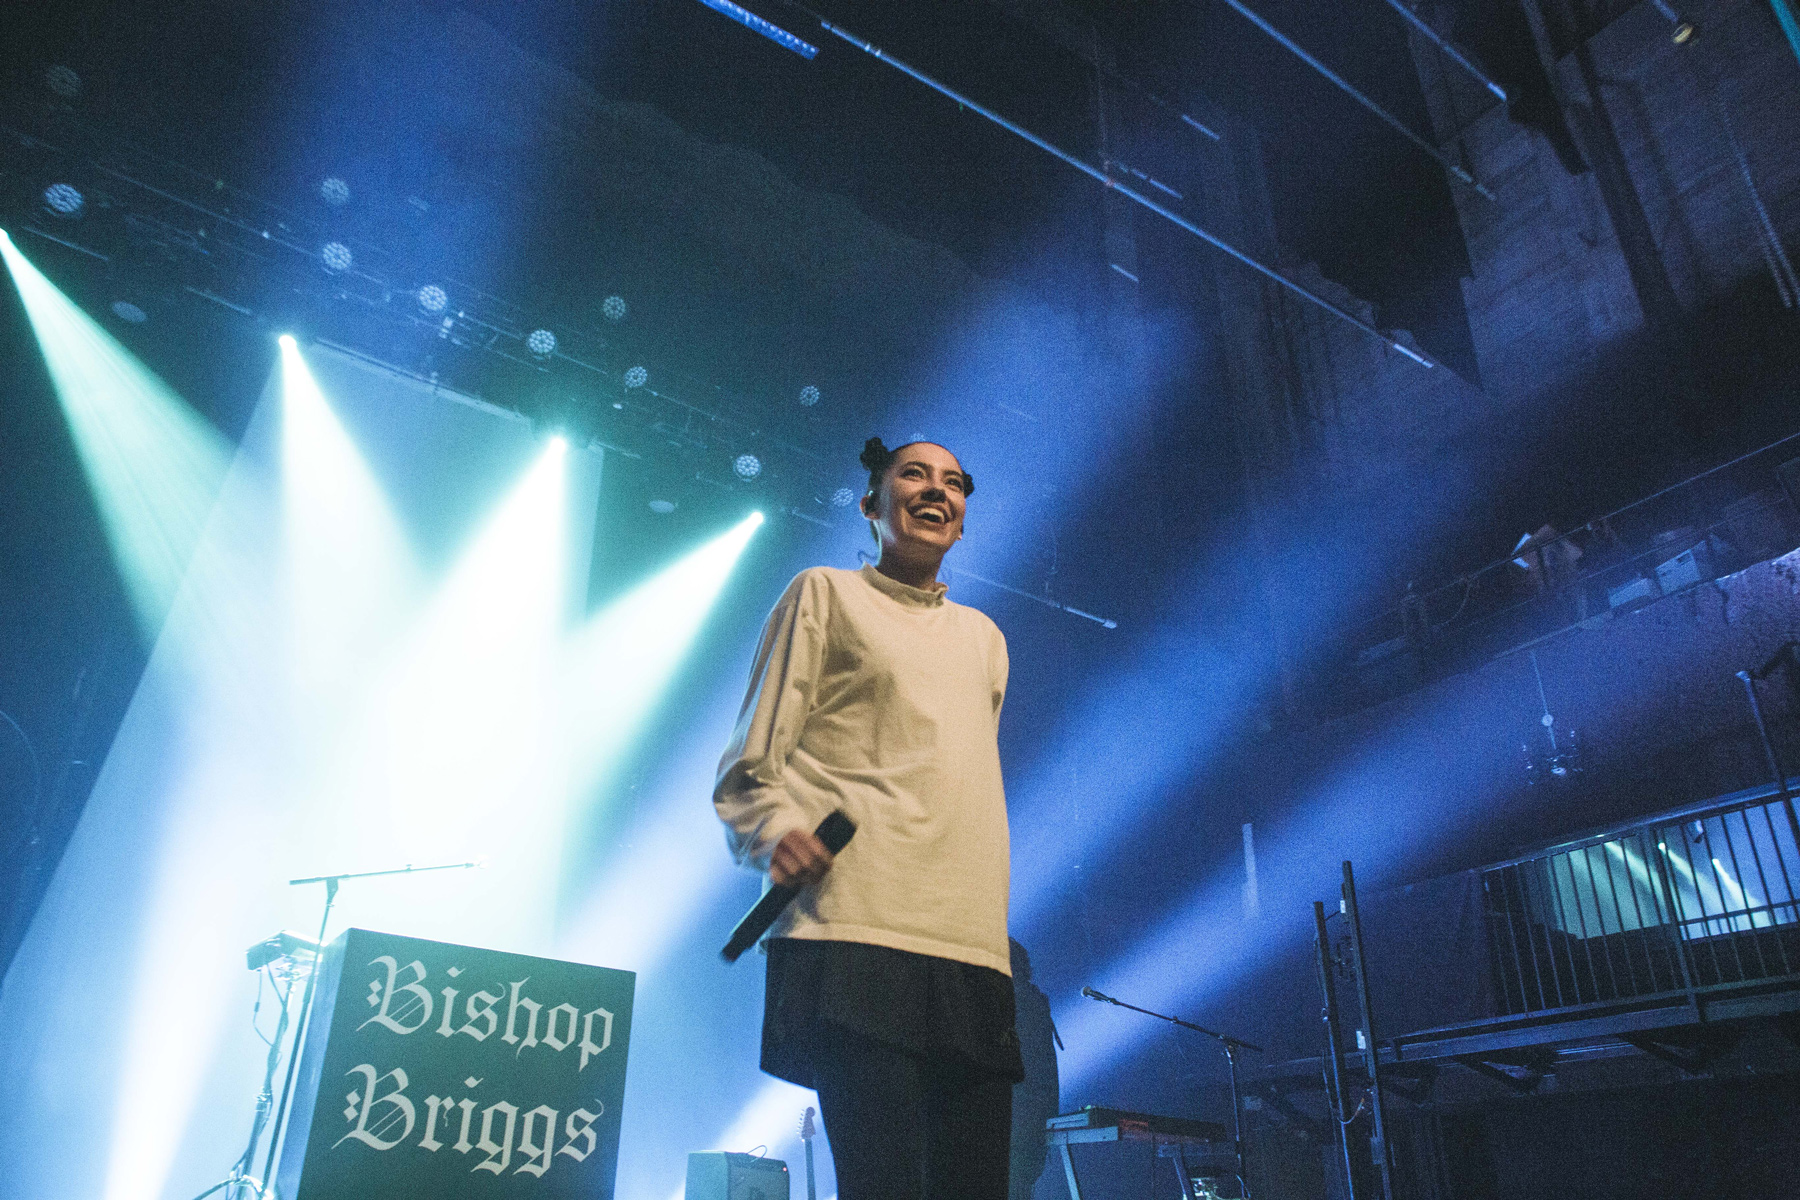 Bishop Briggs performing at the Fonda